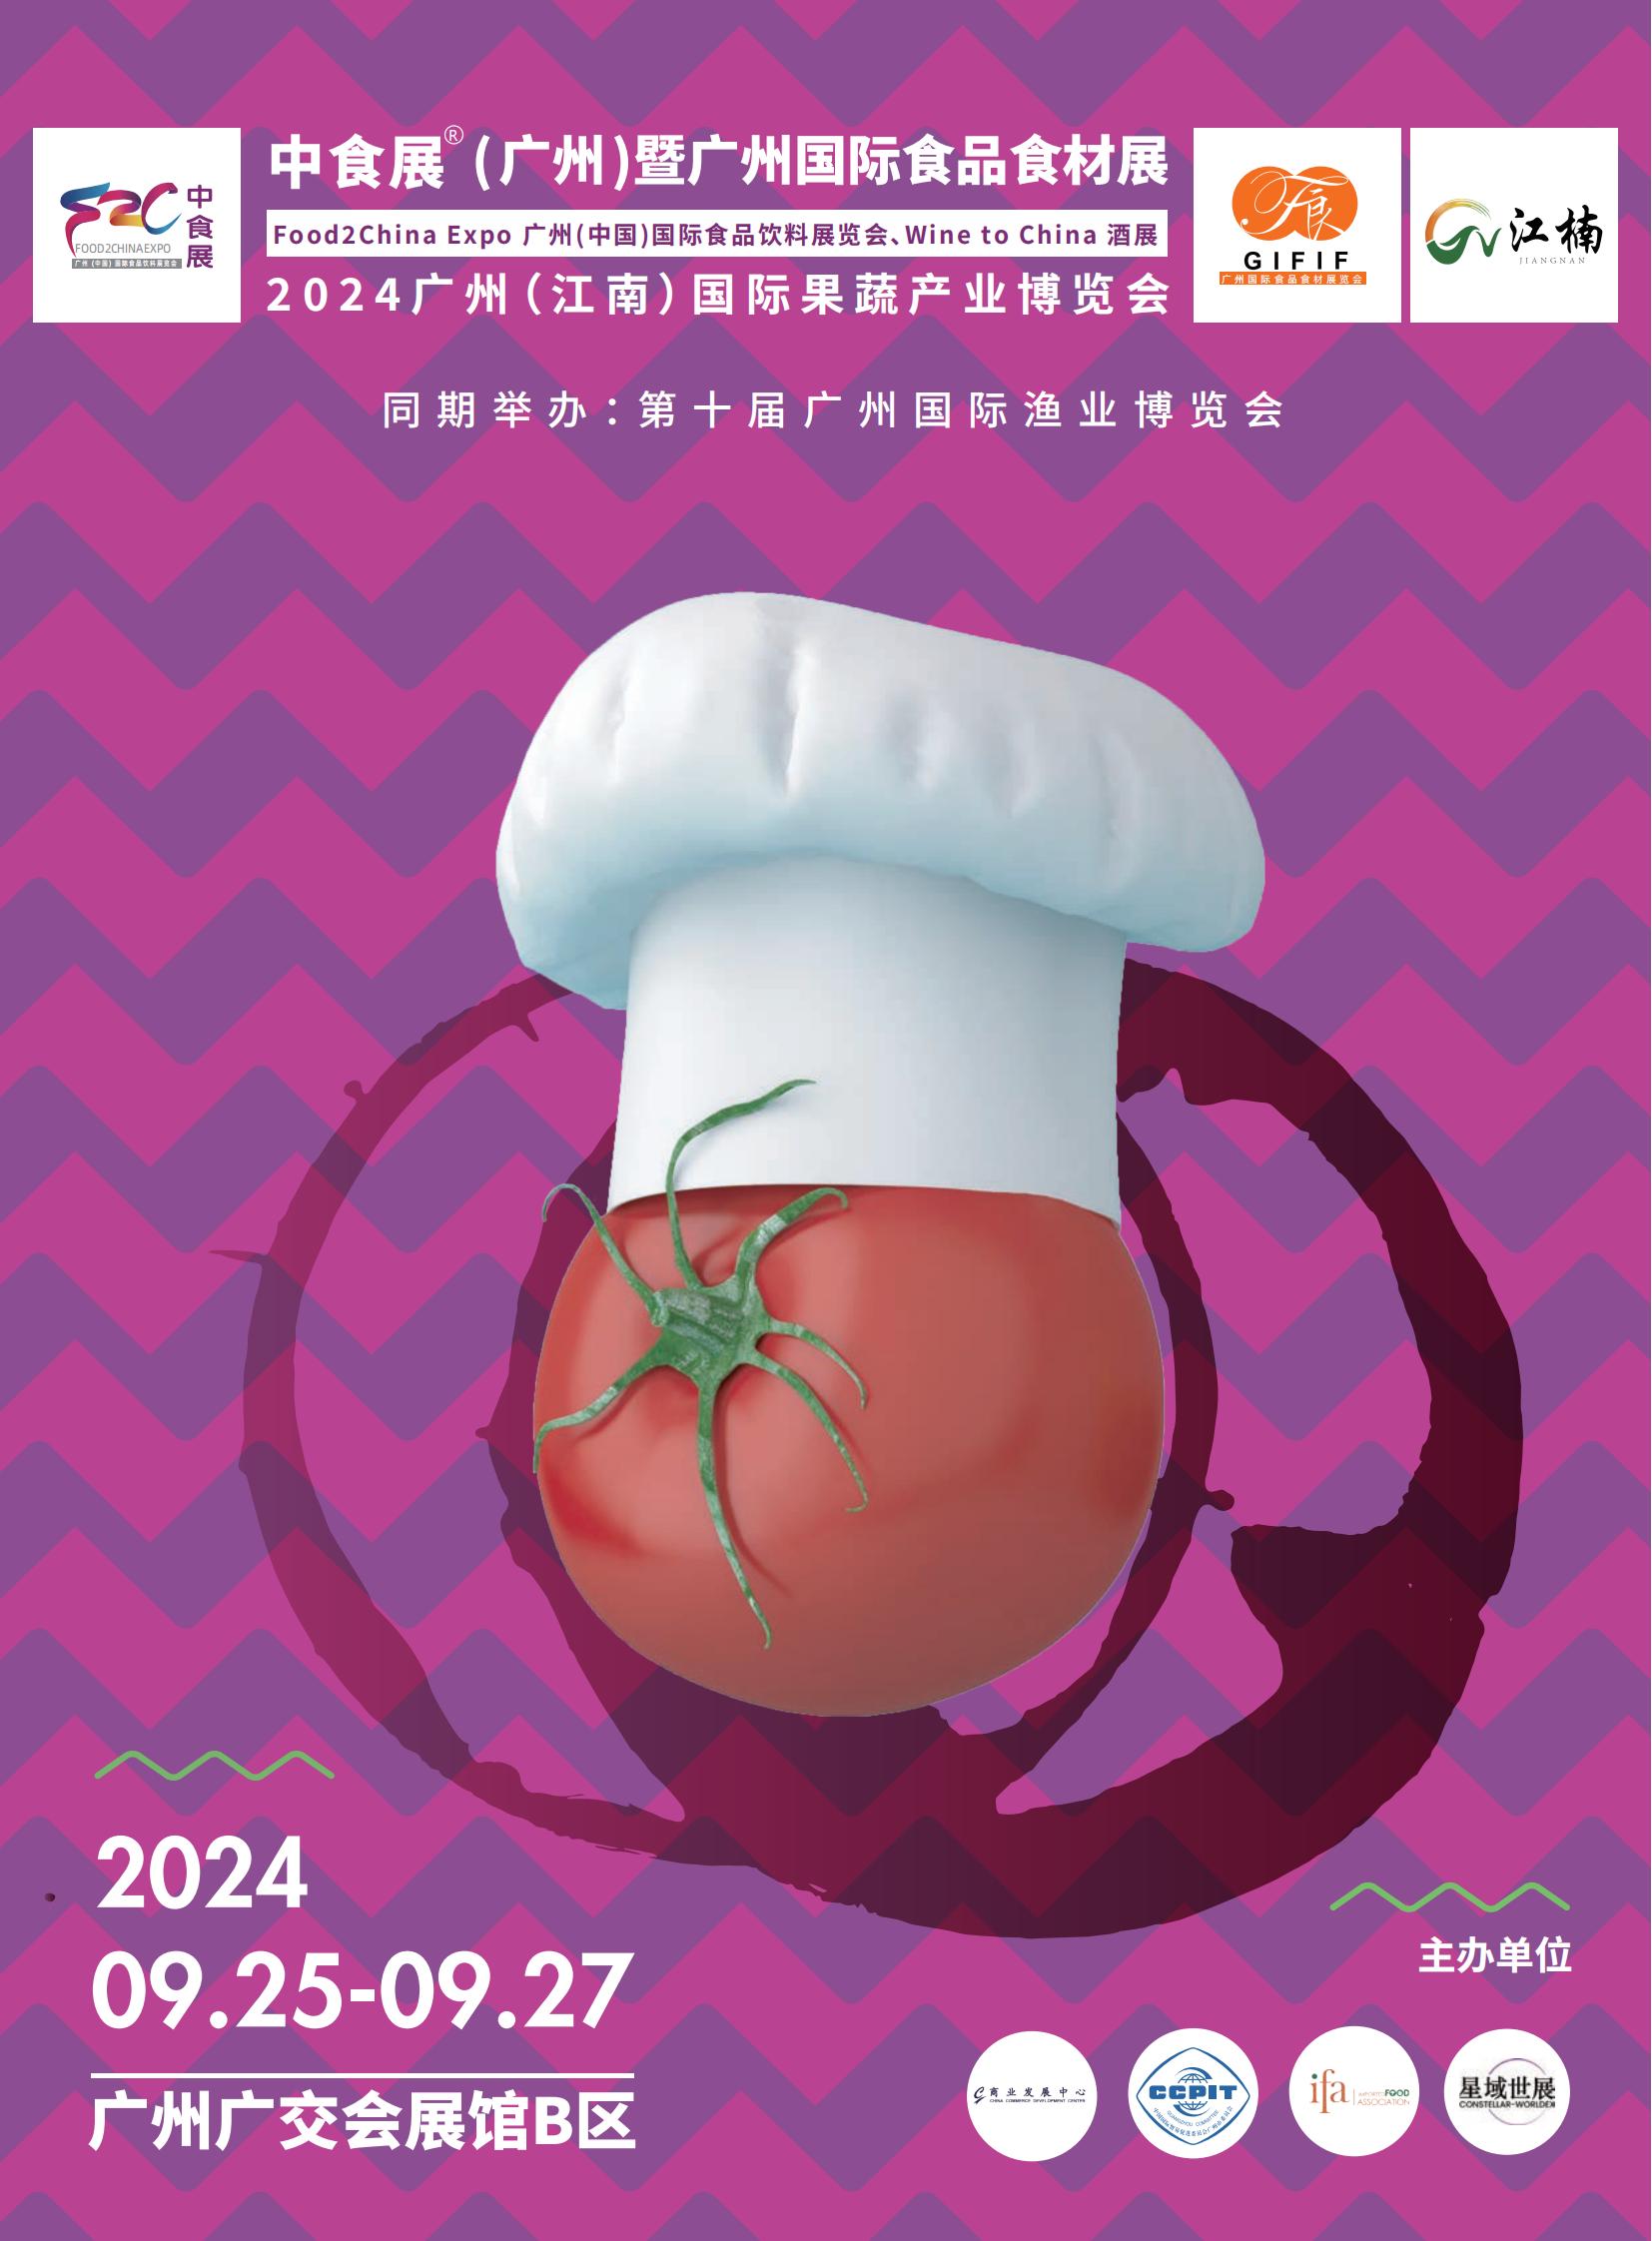 2024中食展暨广州国际食品饮料及食品食材展